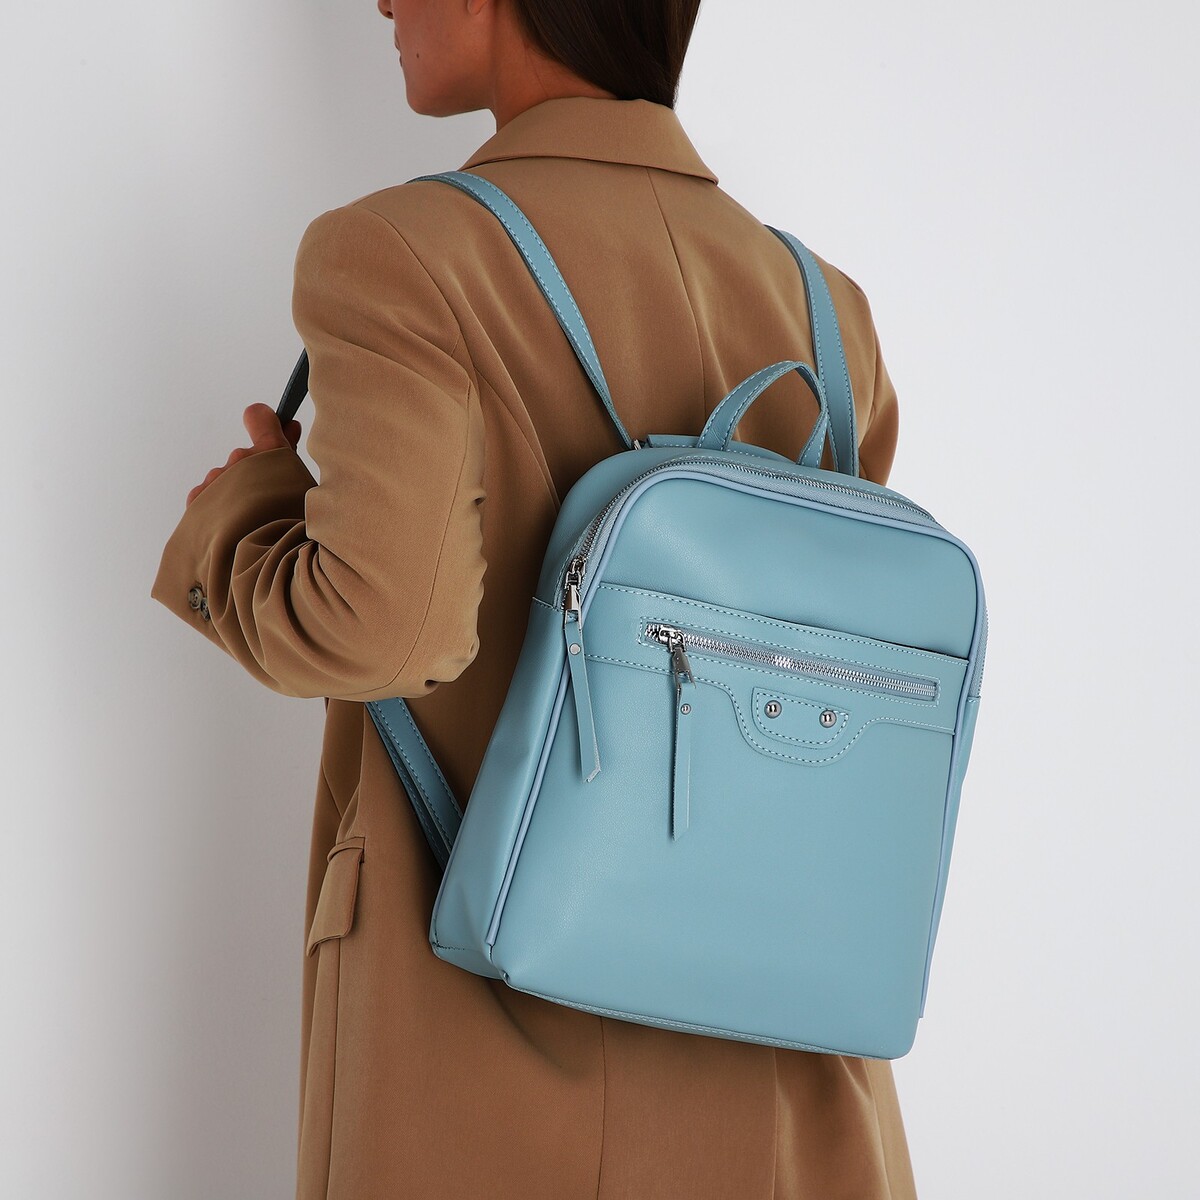 Рюкзак женский из искусственной кожи на молнии, 3 кармана, цвет голубой рюкзак женский из искусственной кожи на молнии 2 кармана бордовый